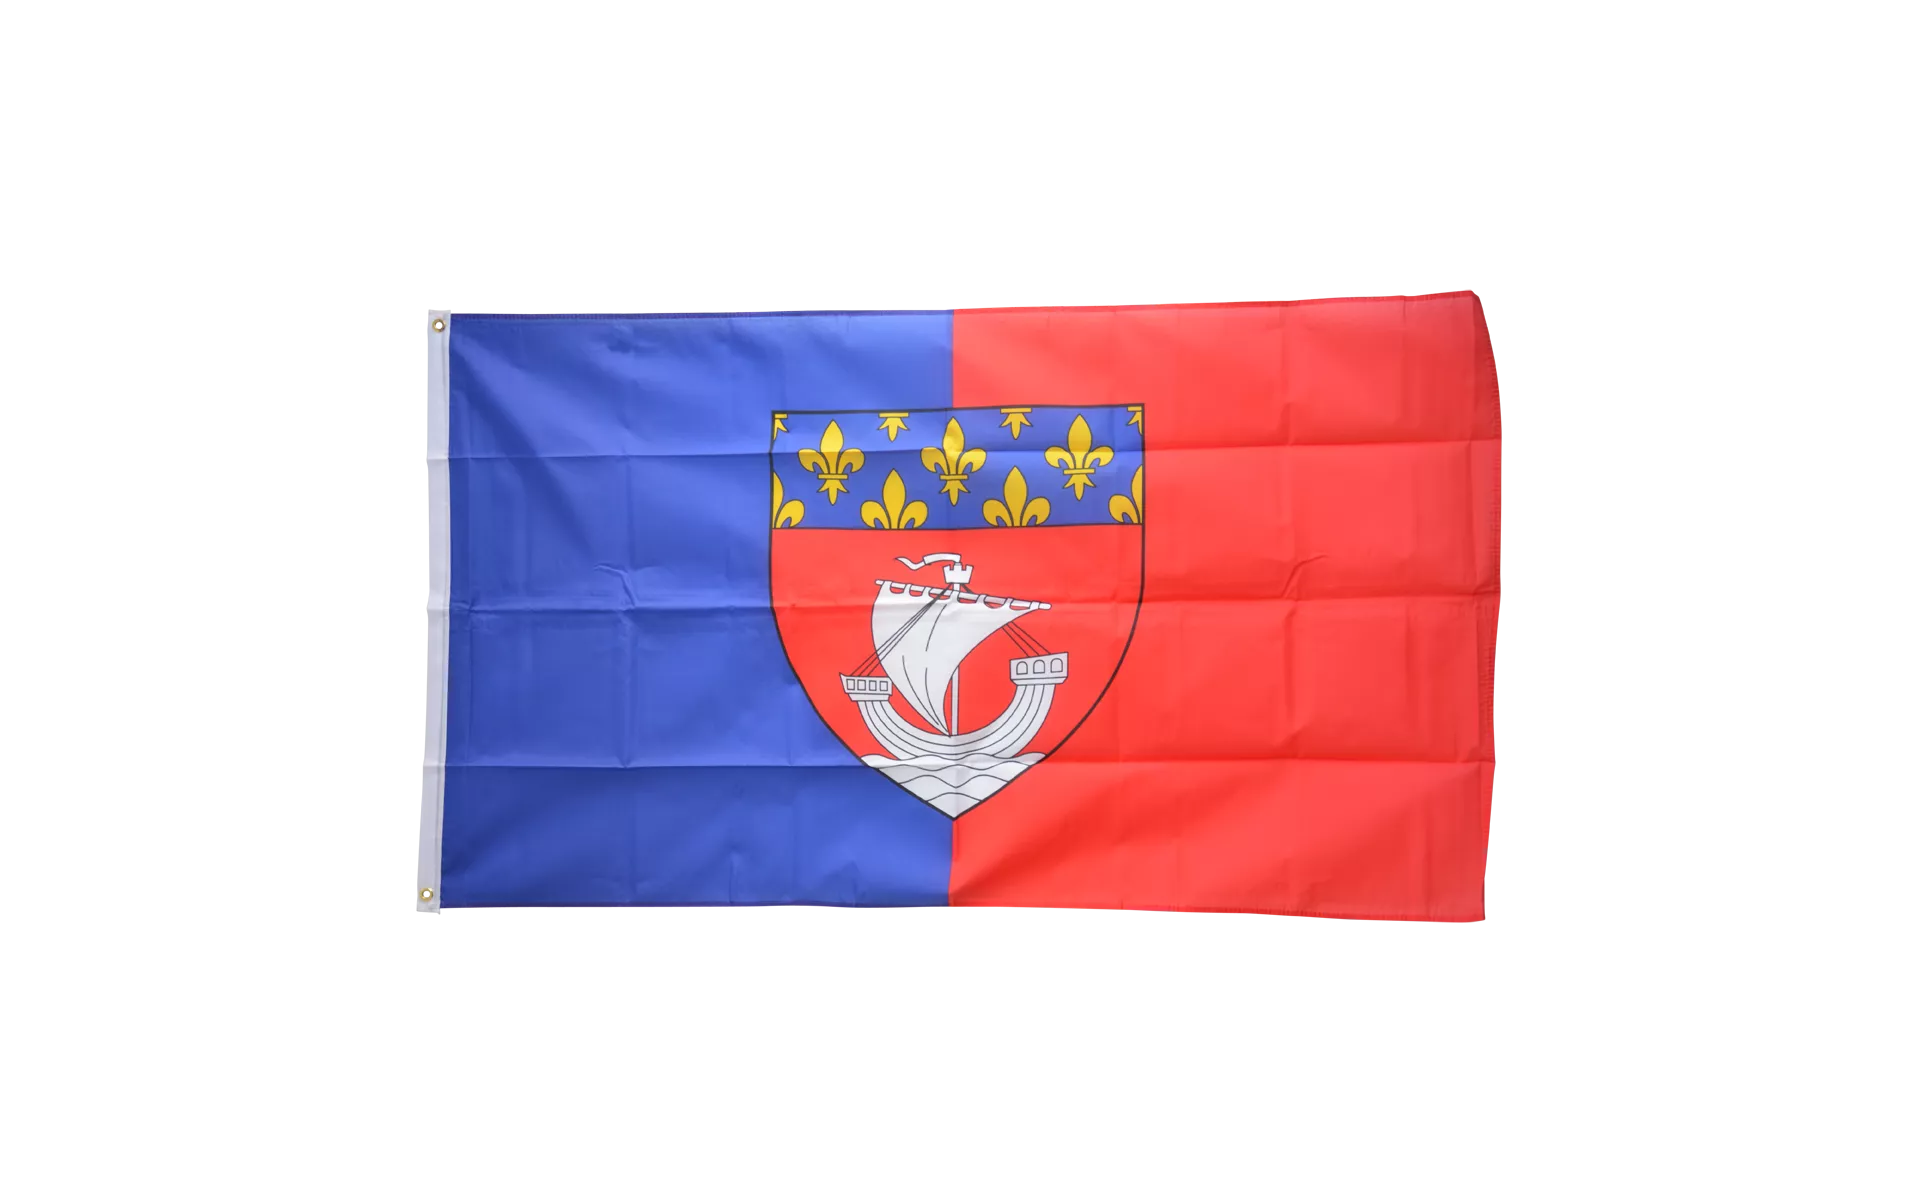 7x8cm Armband für Sp Schweißband Fahne Flagge Frankreich Ile de France 2er Set 